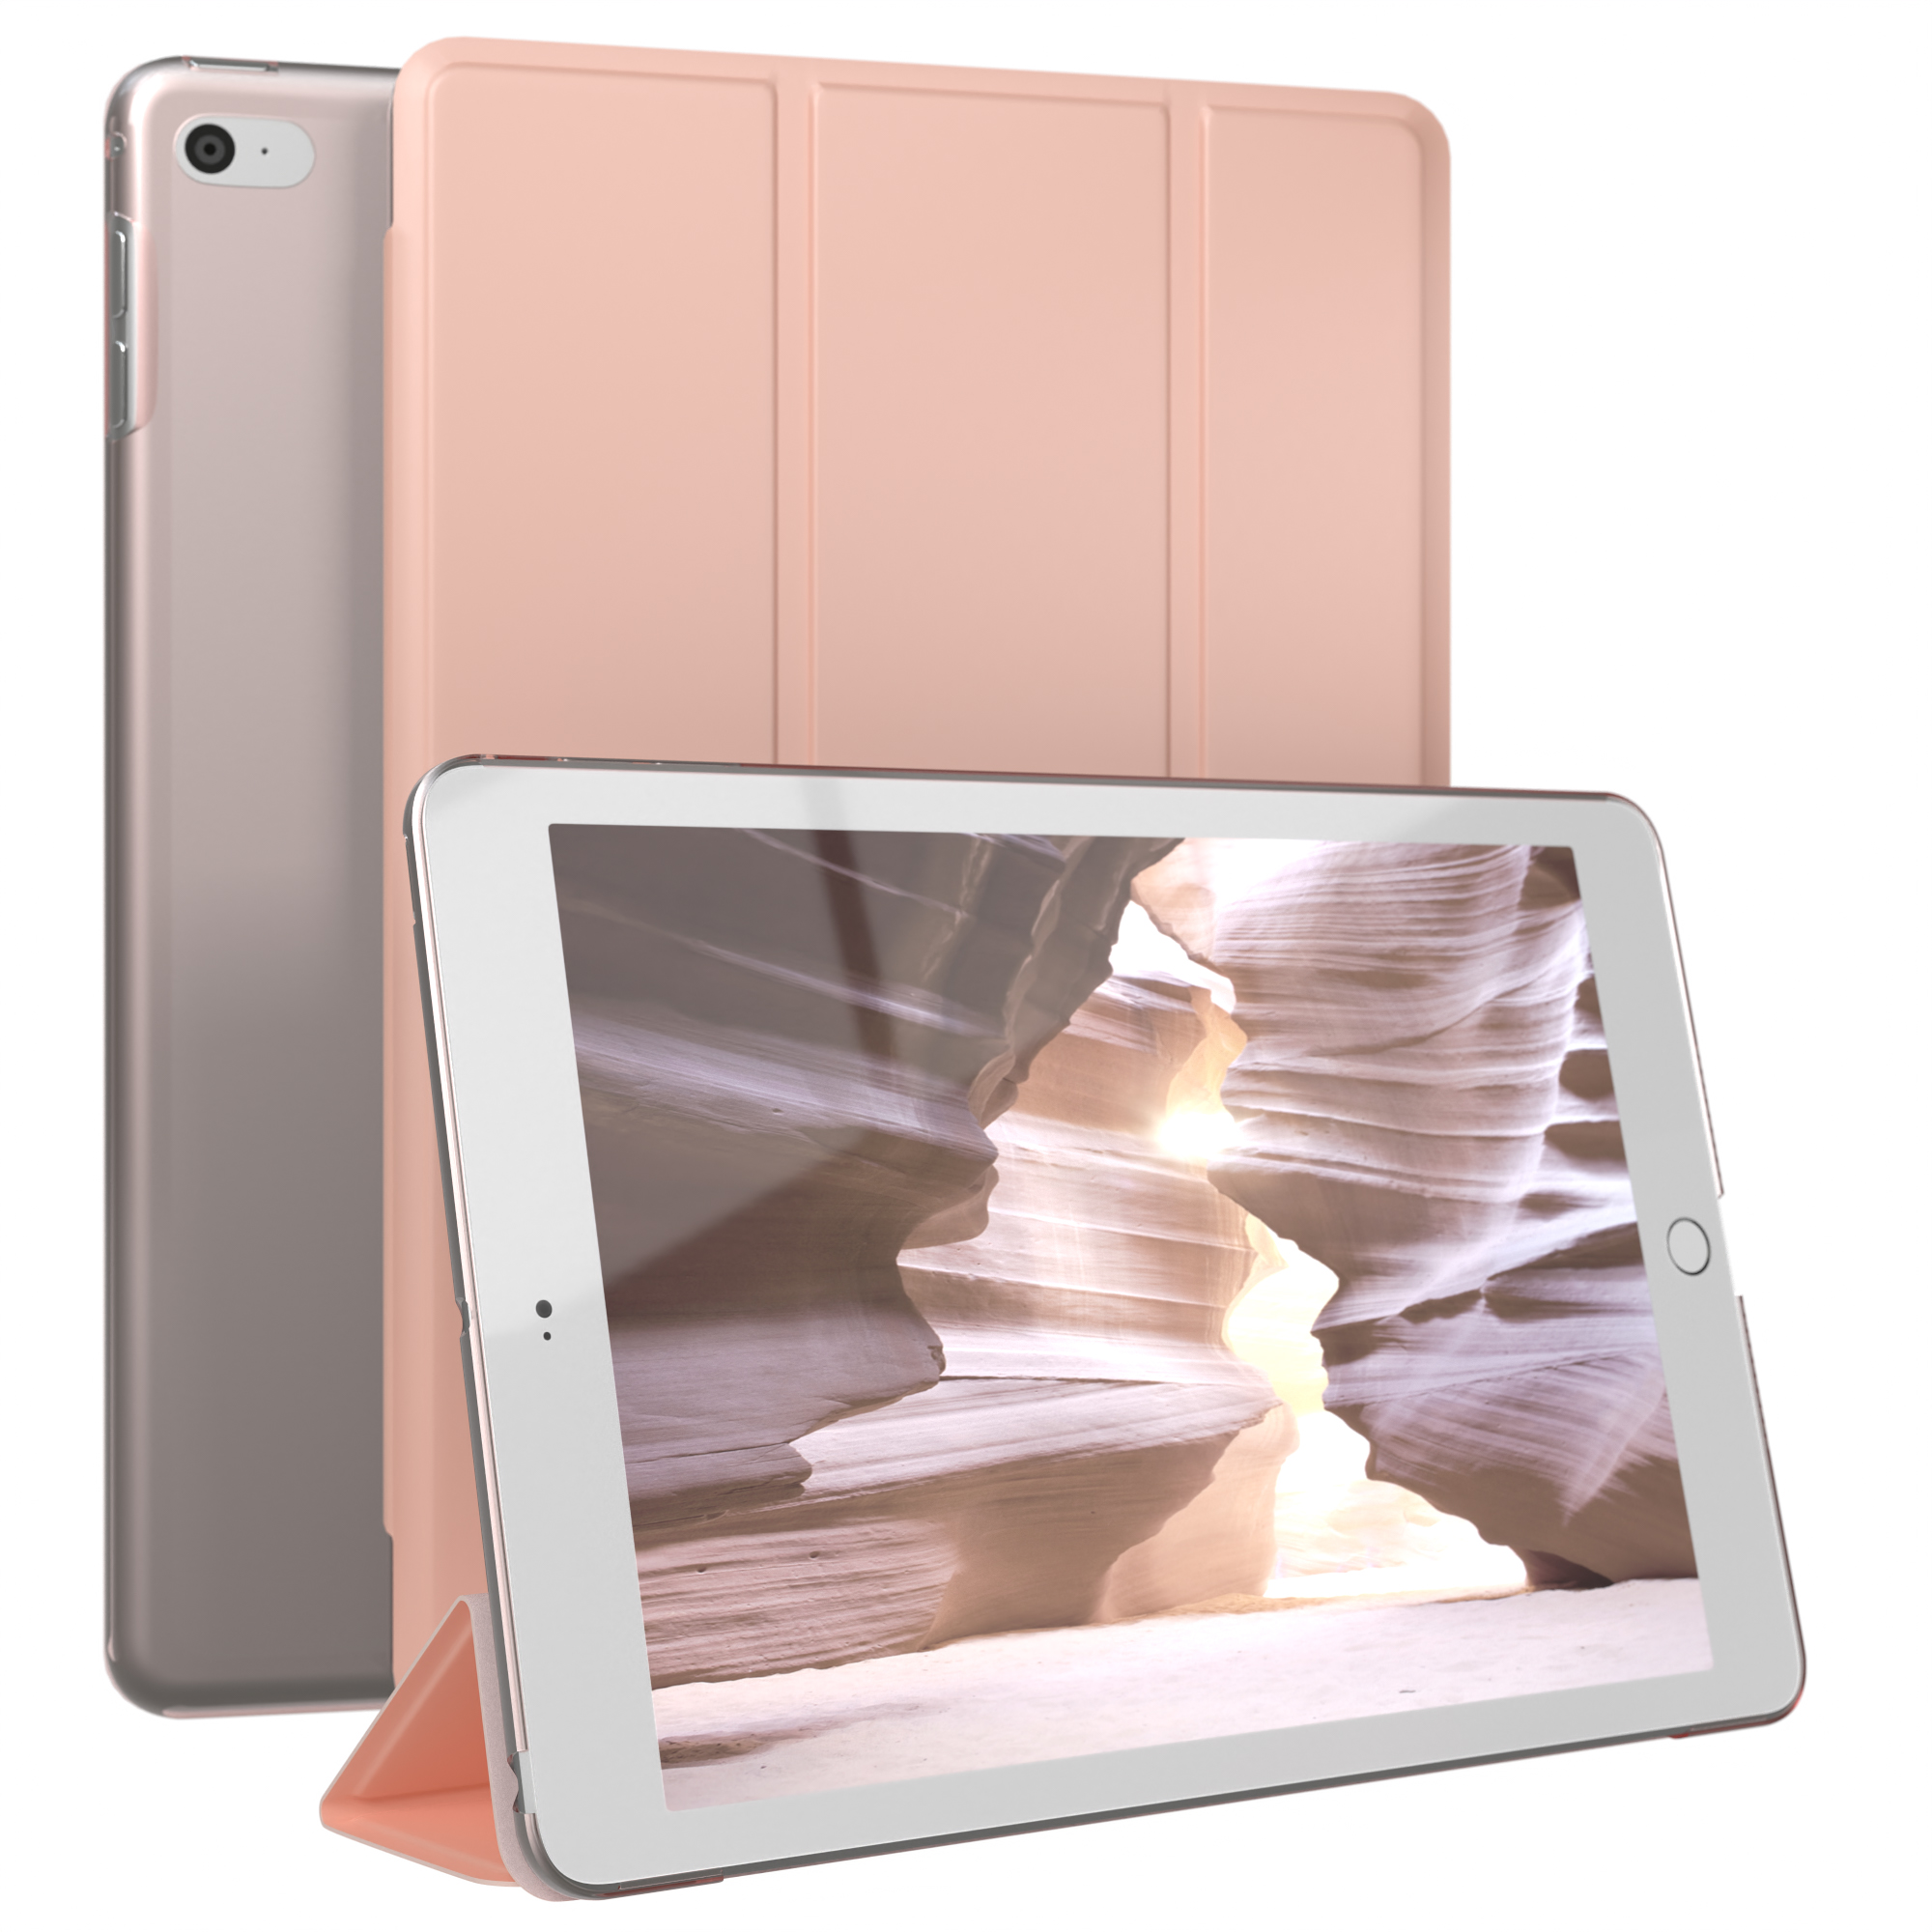 EAZY CASE Smart für 5. Apple Rosé Kunstleder, iPad Tablethülle / Generation Mini 4. Bookcover Gold für Apple Case